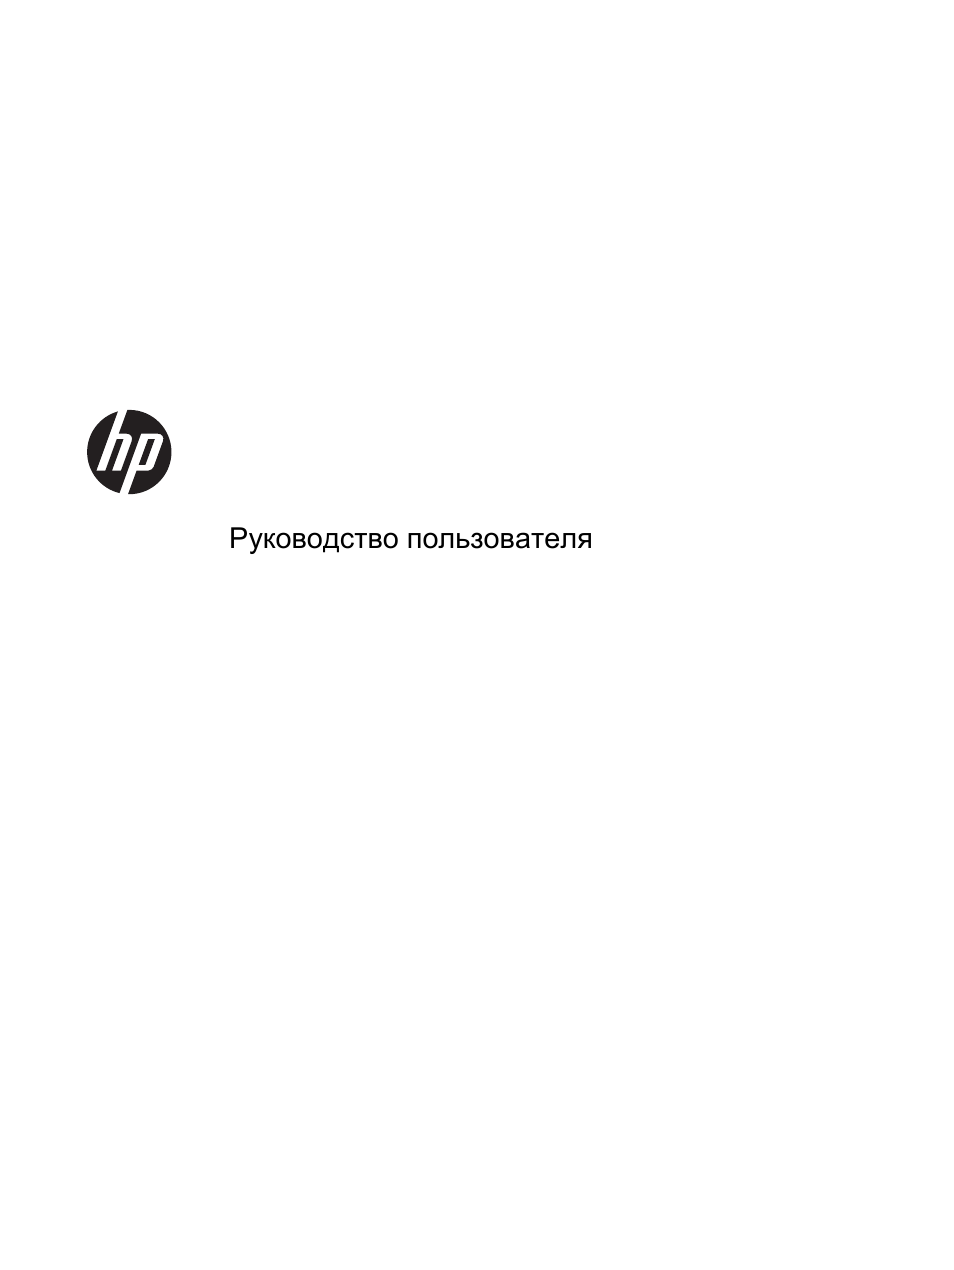 Инструкция по эксплуатации HP Планшетный ПК HP ElitePad 900 G1 | 61 cтраница